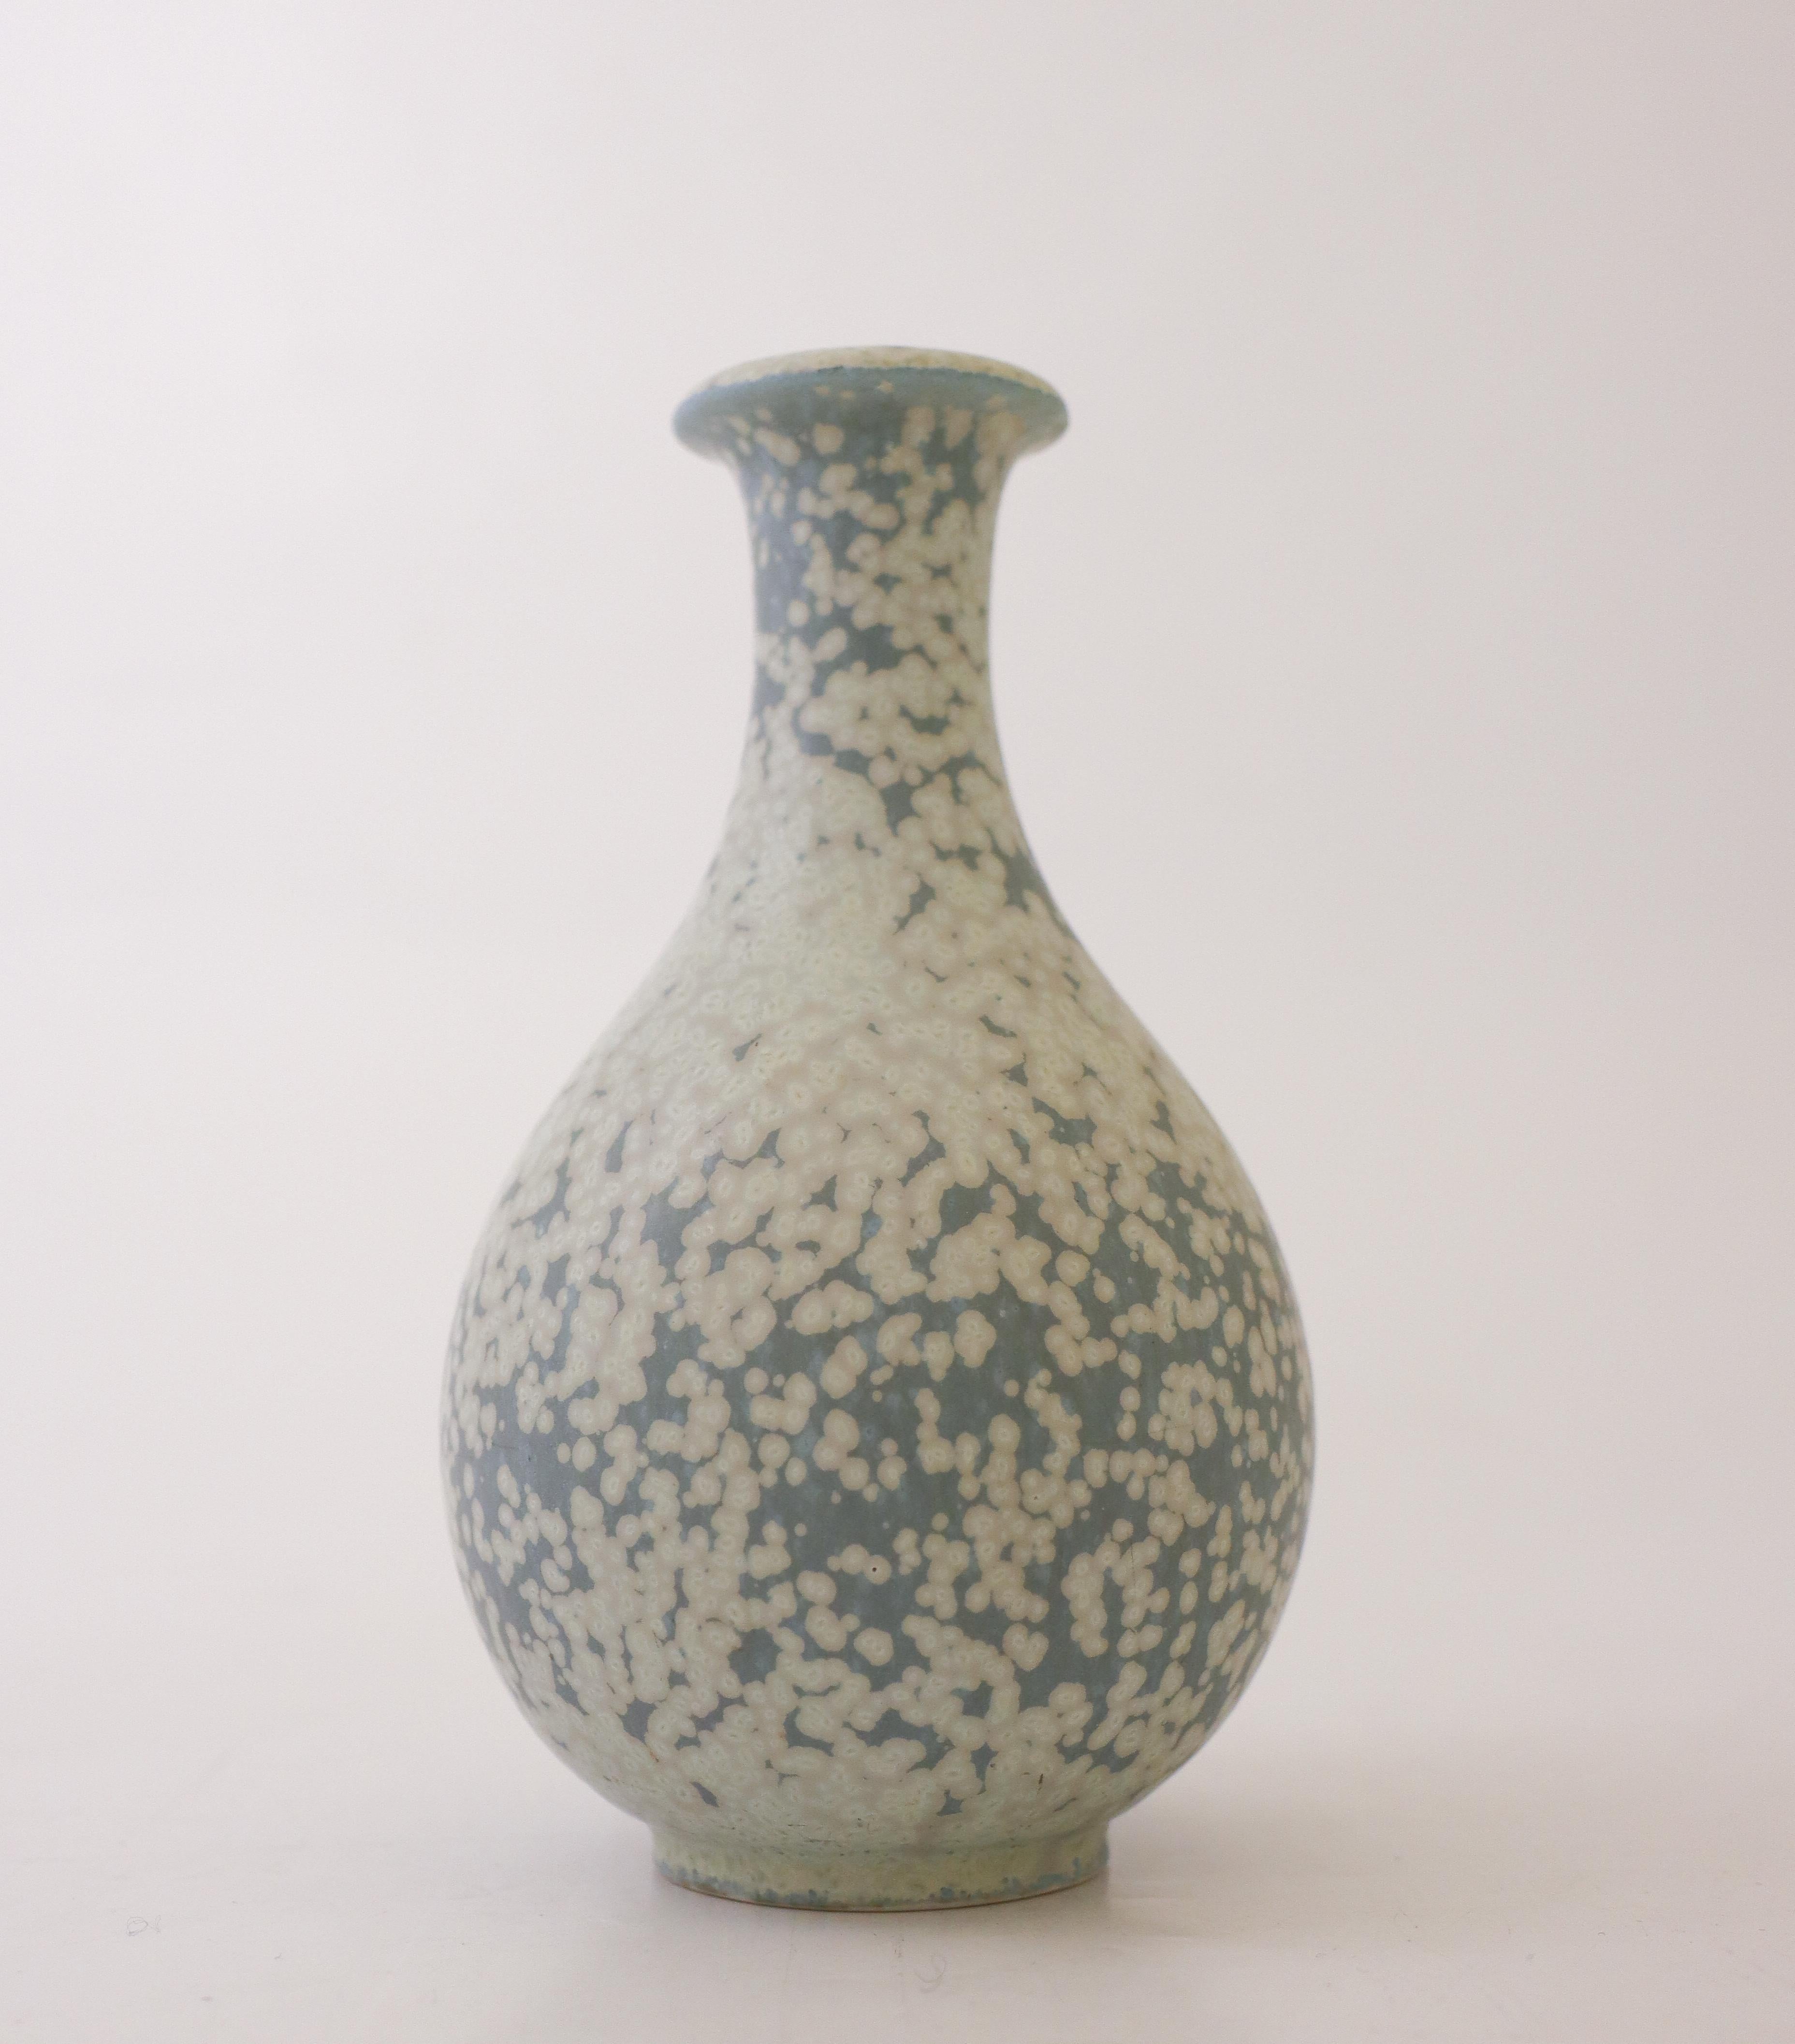 Eine schöne grau/blau gesprenkelte Vase, entworfen von Gunnar Nylund bei Rörstrand. Die Vase ist 14,5 cm hoch und hat einen Durchmesser von 8,5 cm (3,4